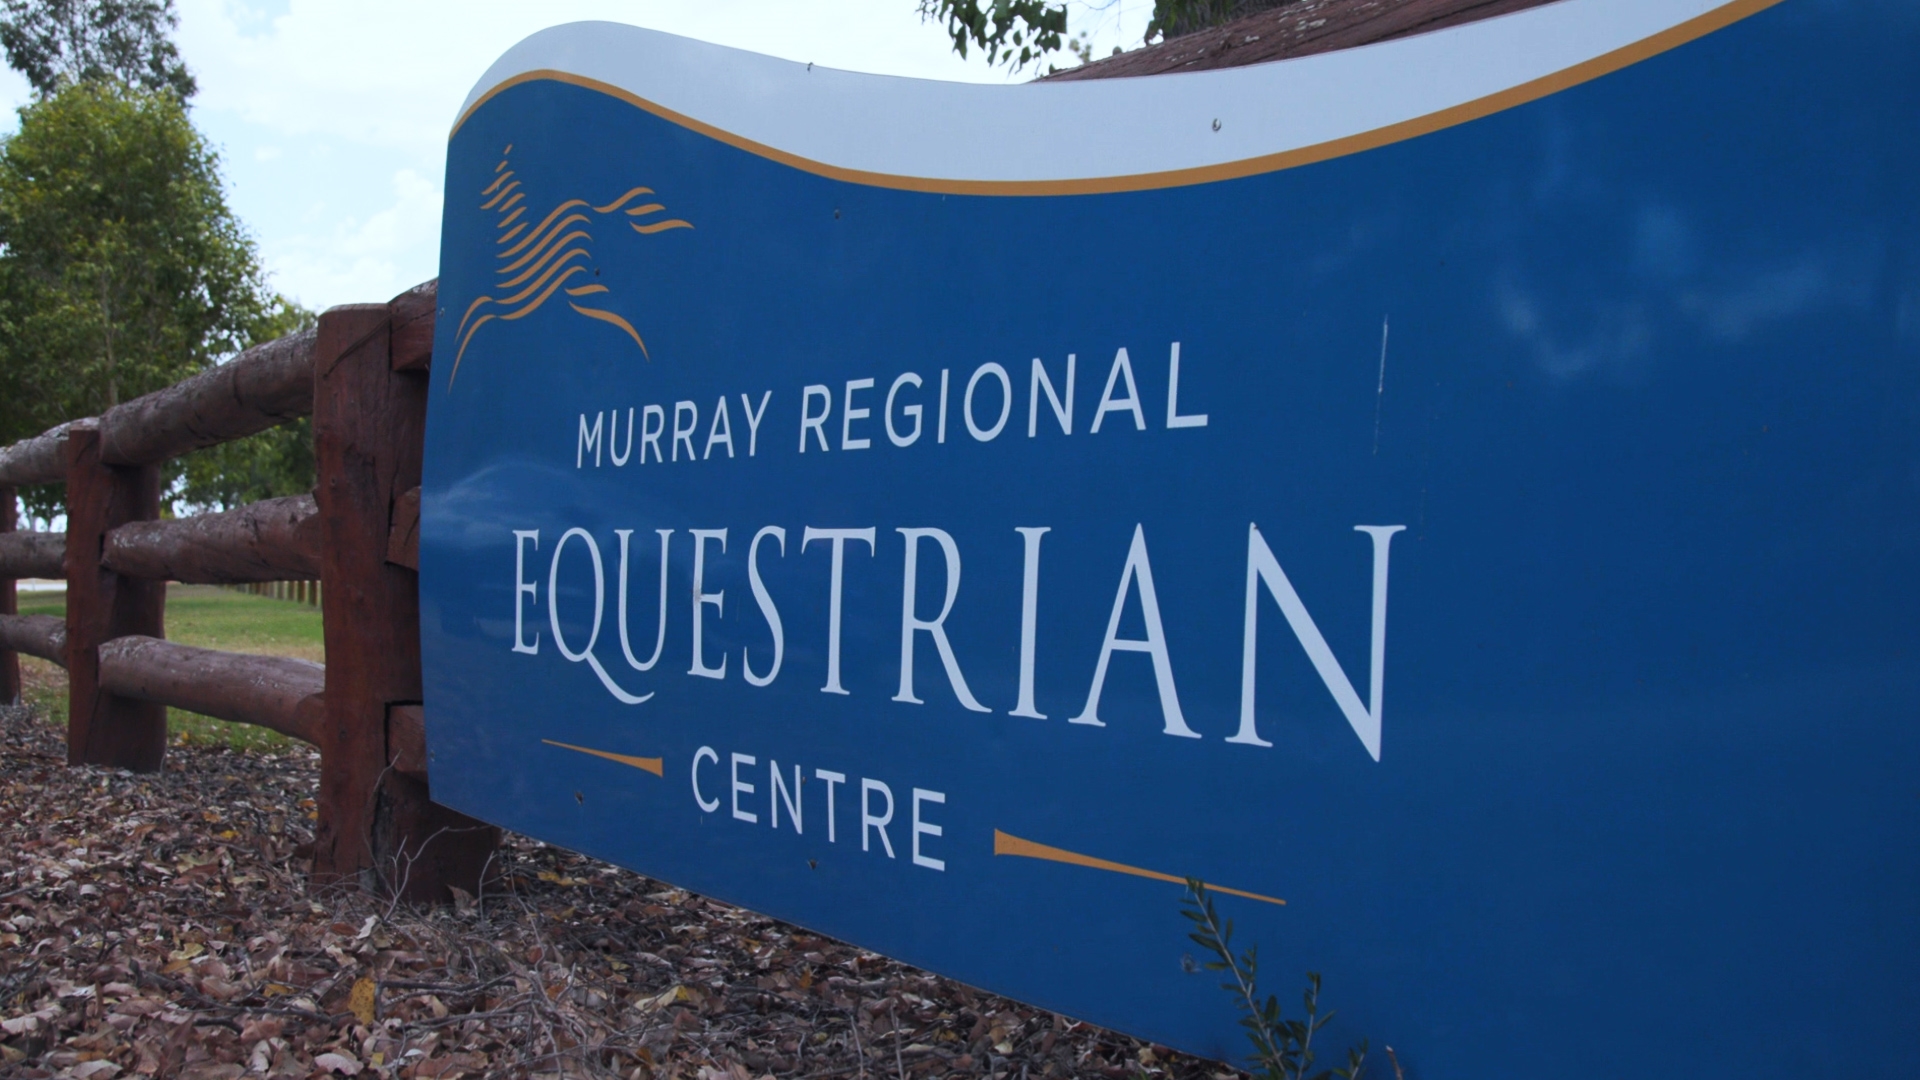 Murray Regional Equestrian Centre